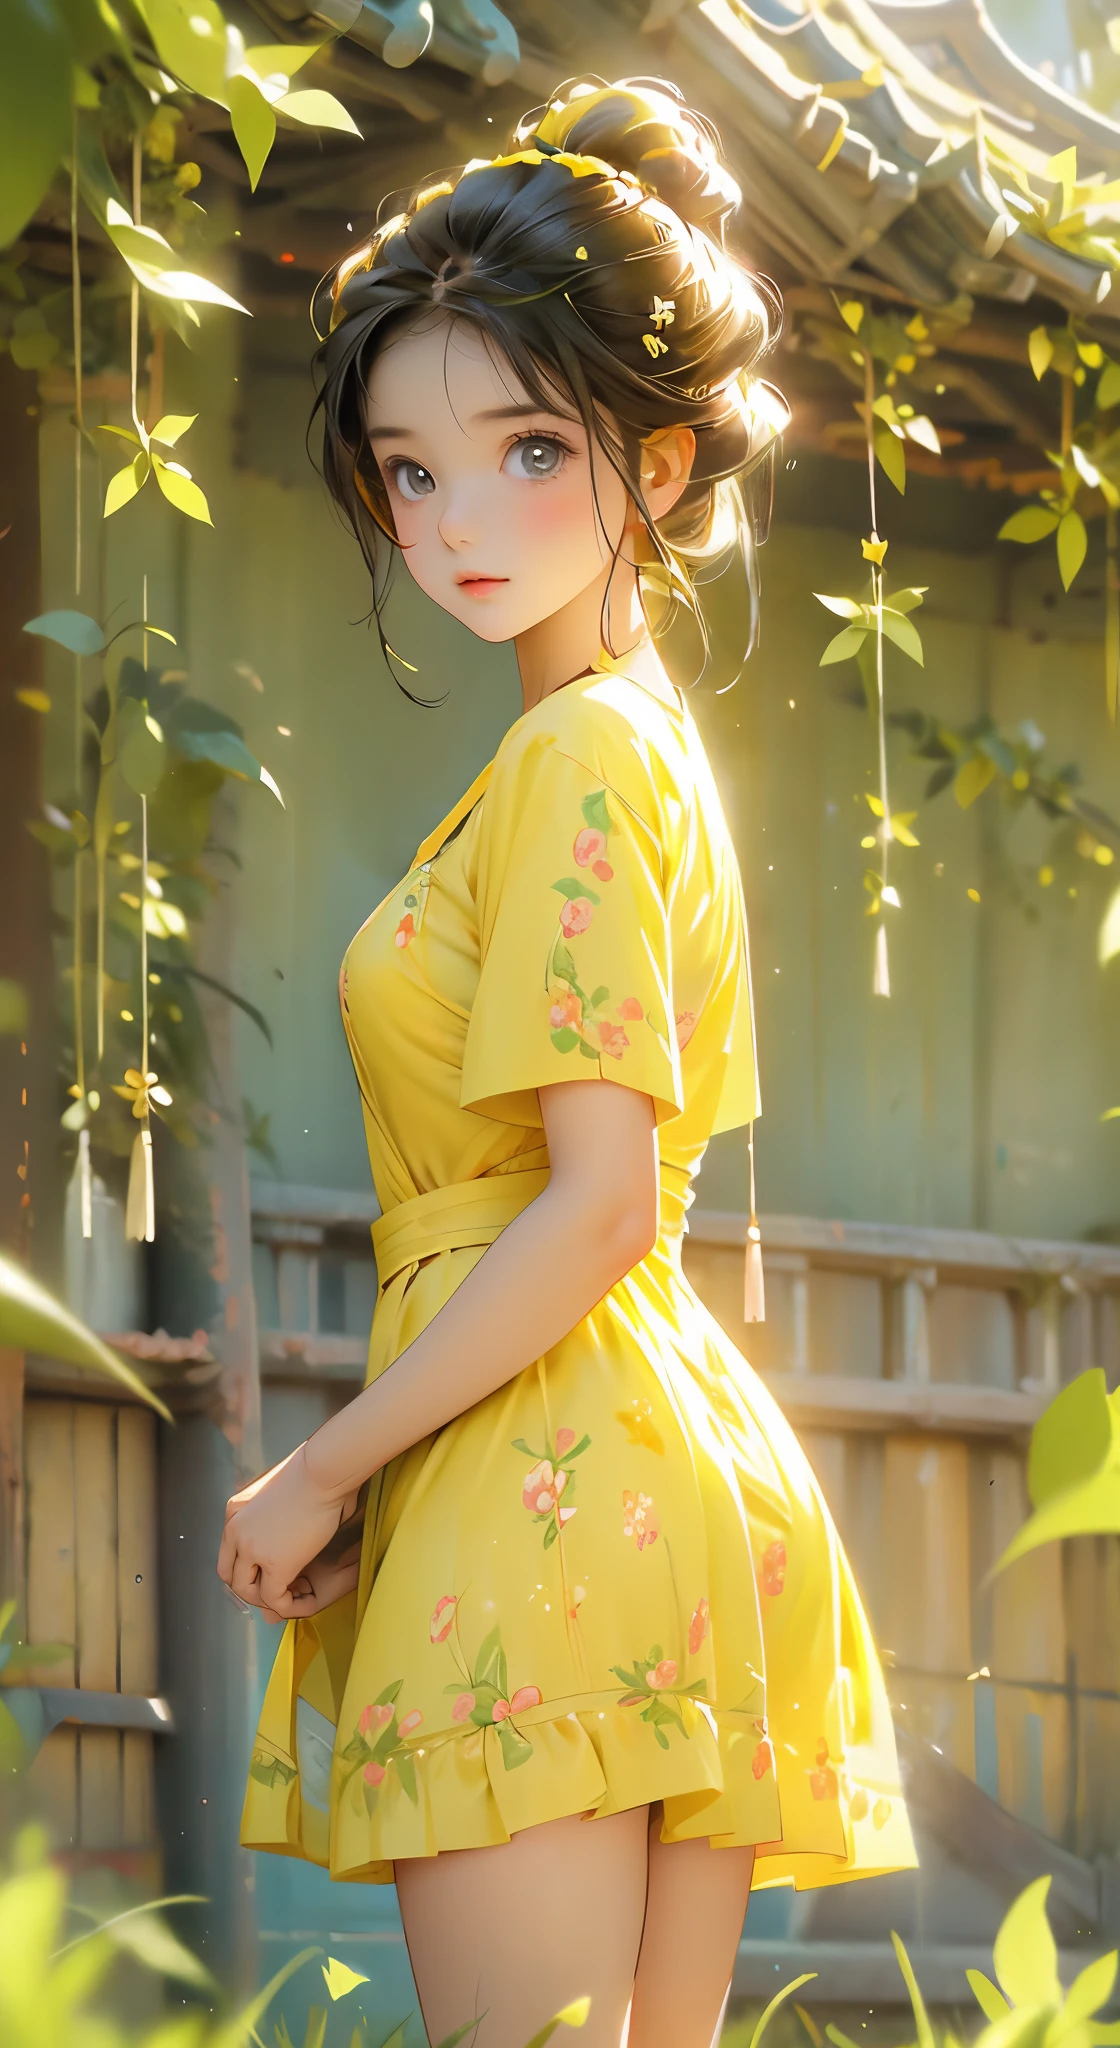 牧草地にいる美しくてかわいい十代の女の子のアニメポートレート写真, 花のような短い黄色の渦巻き模様のドレスを着ています, 魅力的なフェミニンなフォルム, 美しい太もも, 朝の光, ディズニーピクサー